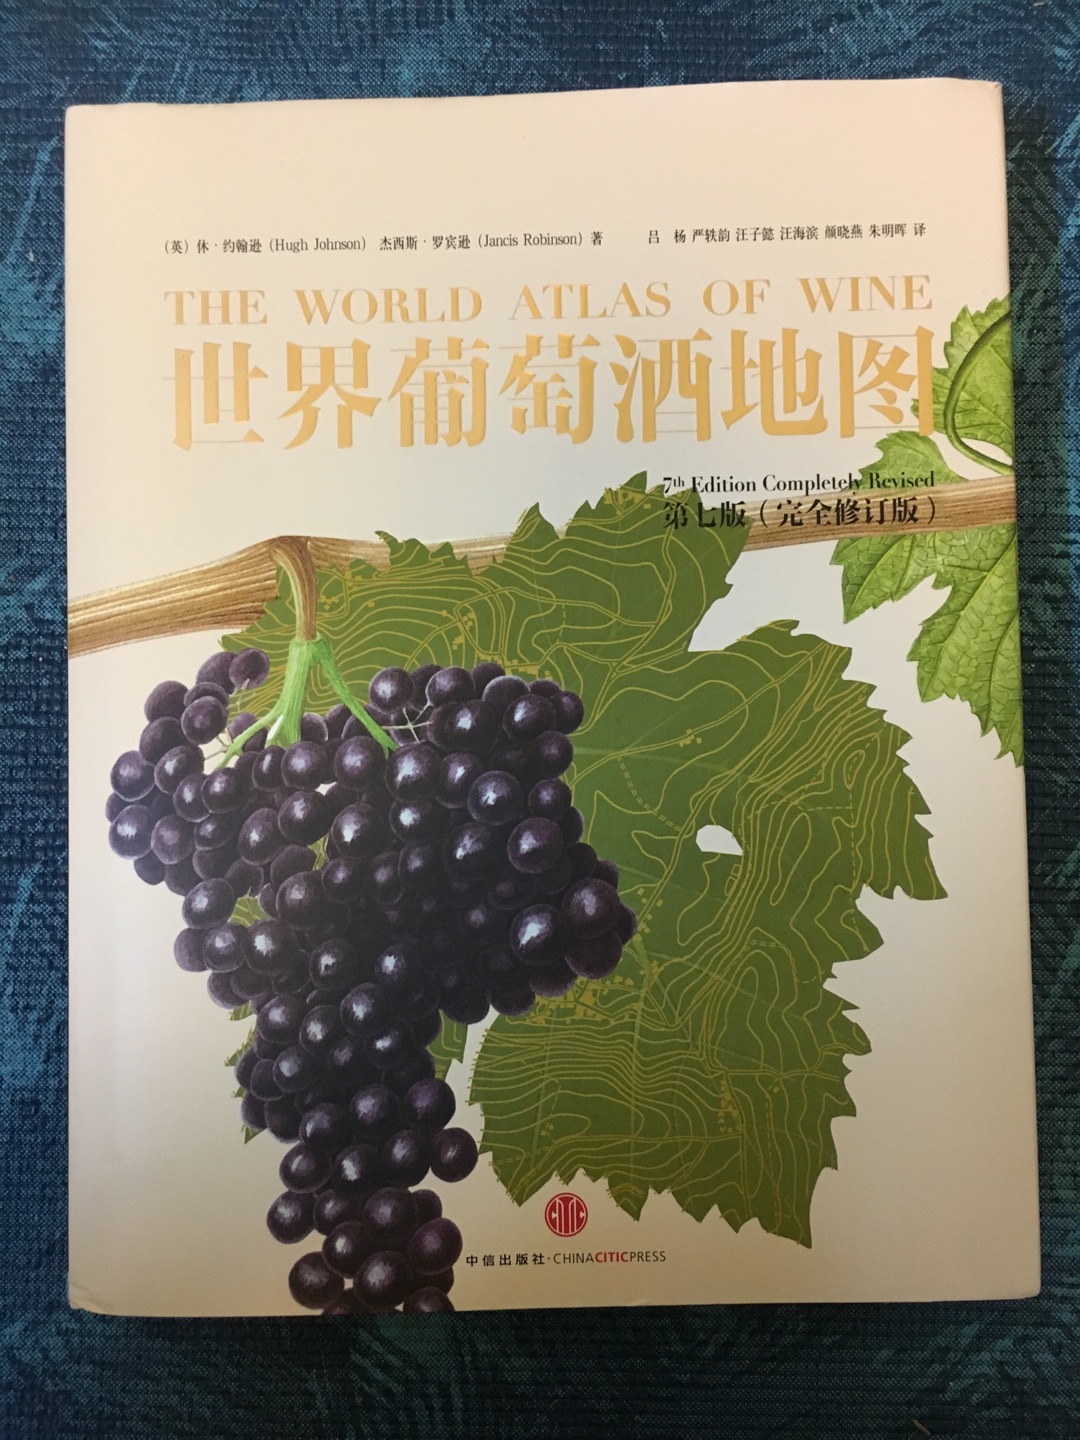 简直可爱的不得了哈哈。葡萄品种还有小画讲解的，葡萄酒颜色也有，书里的插图都很详尽，非常形象，棒。